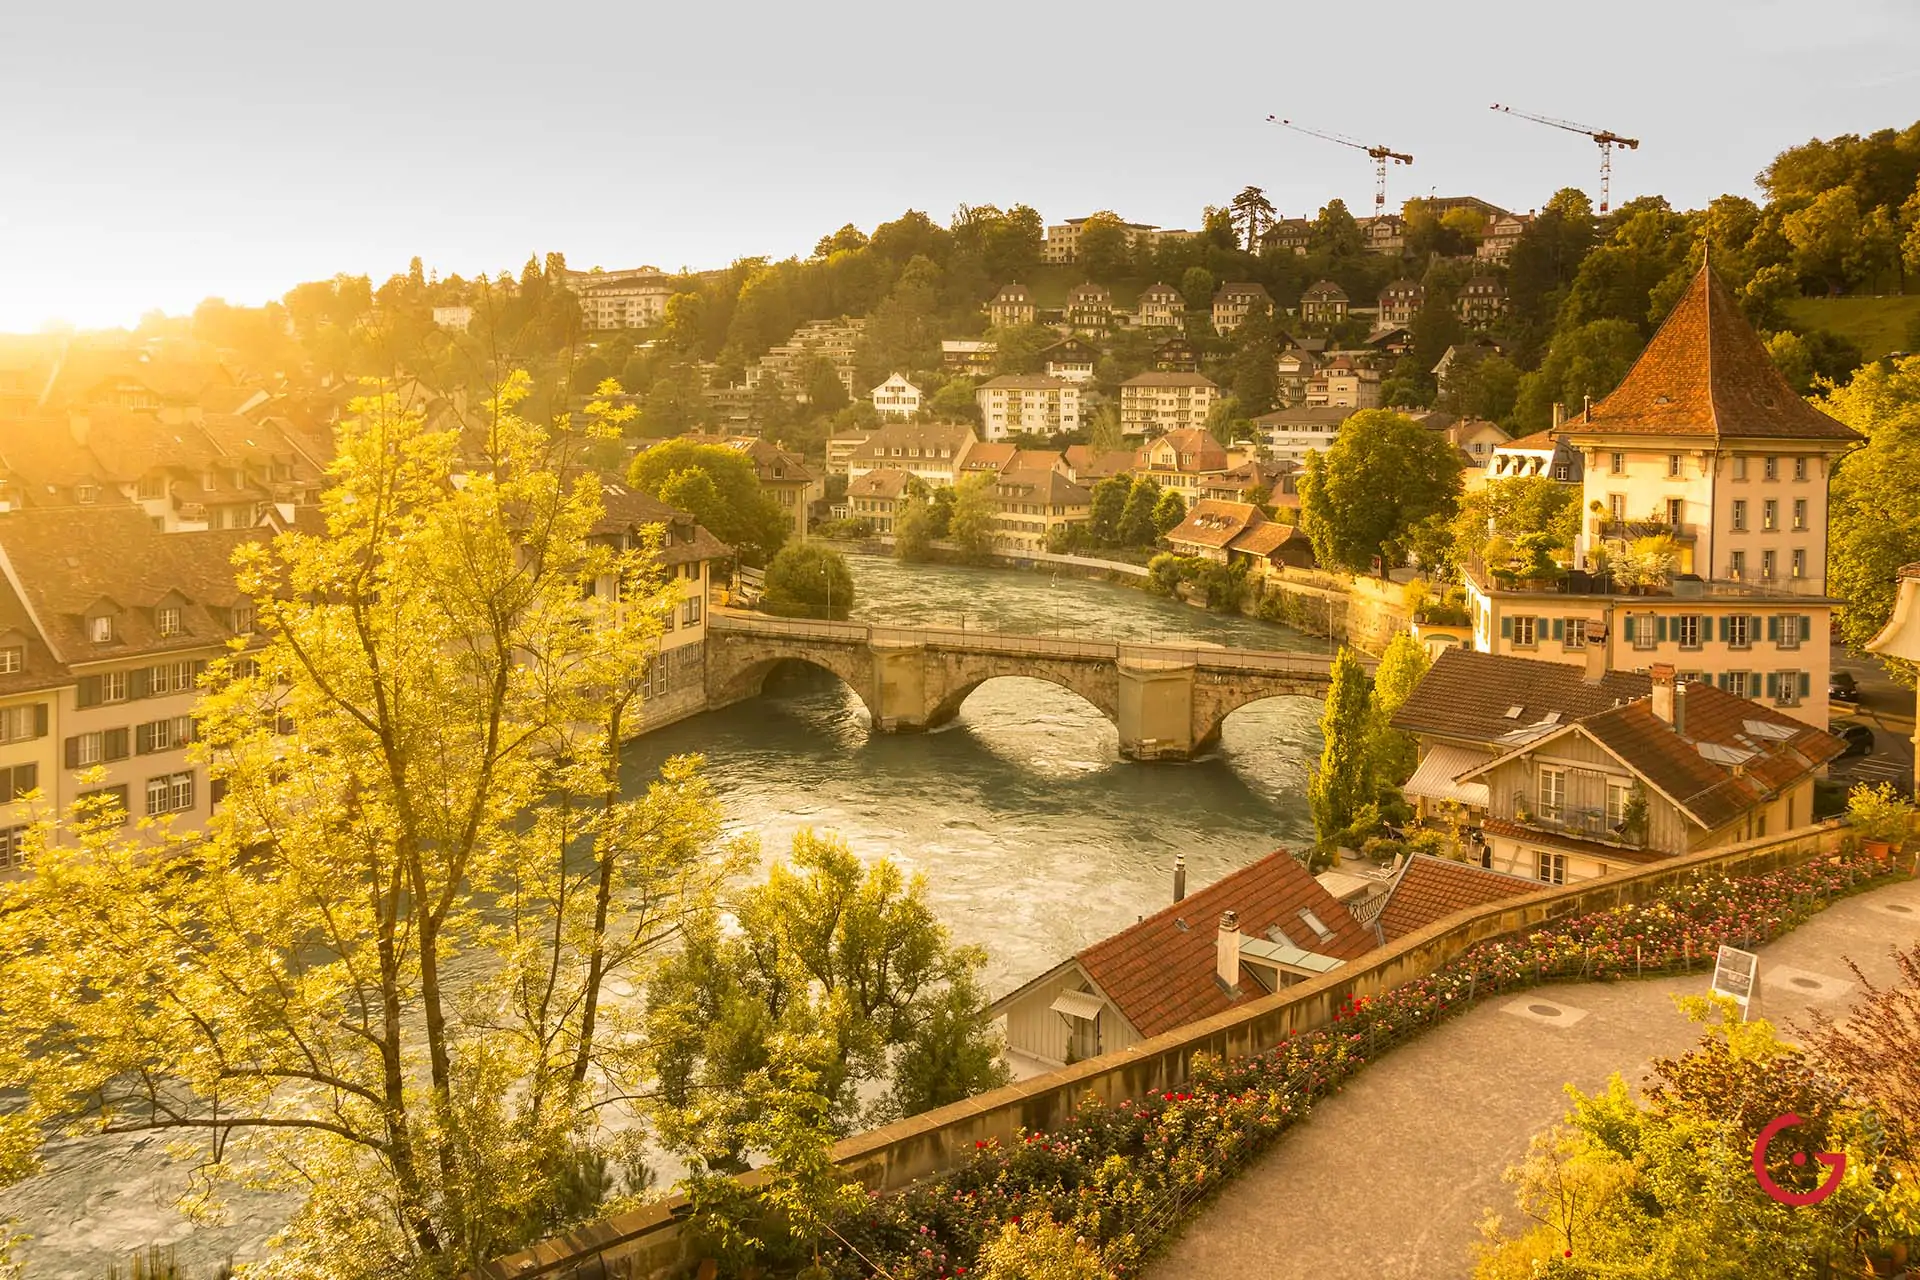 Bern, Switzerland Sunset River View - Travel Photographer and Switzerland Photography